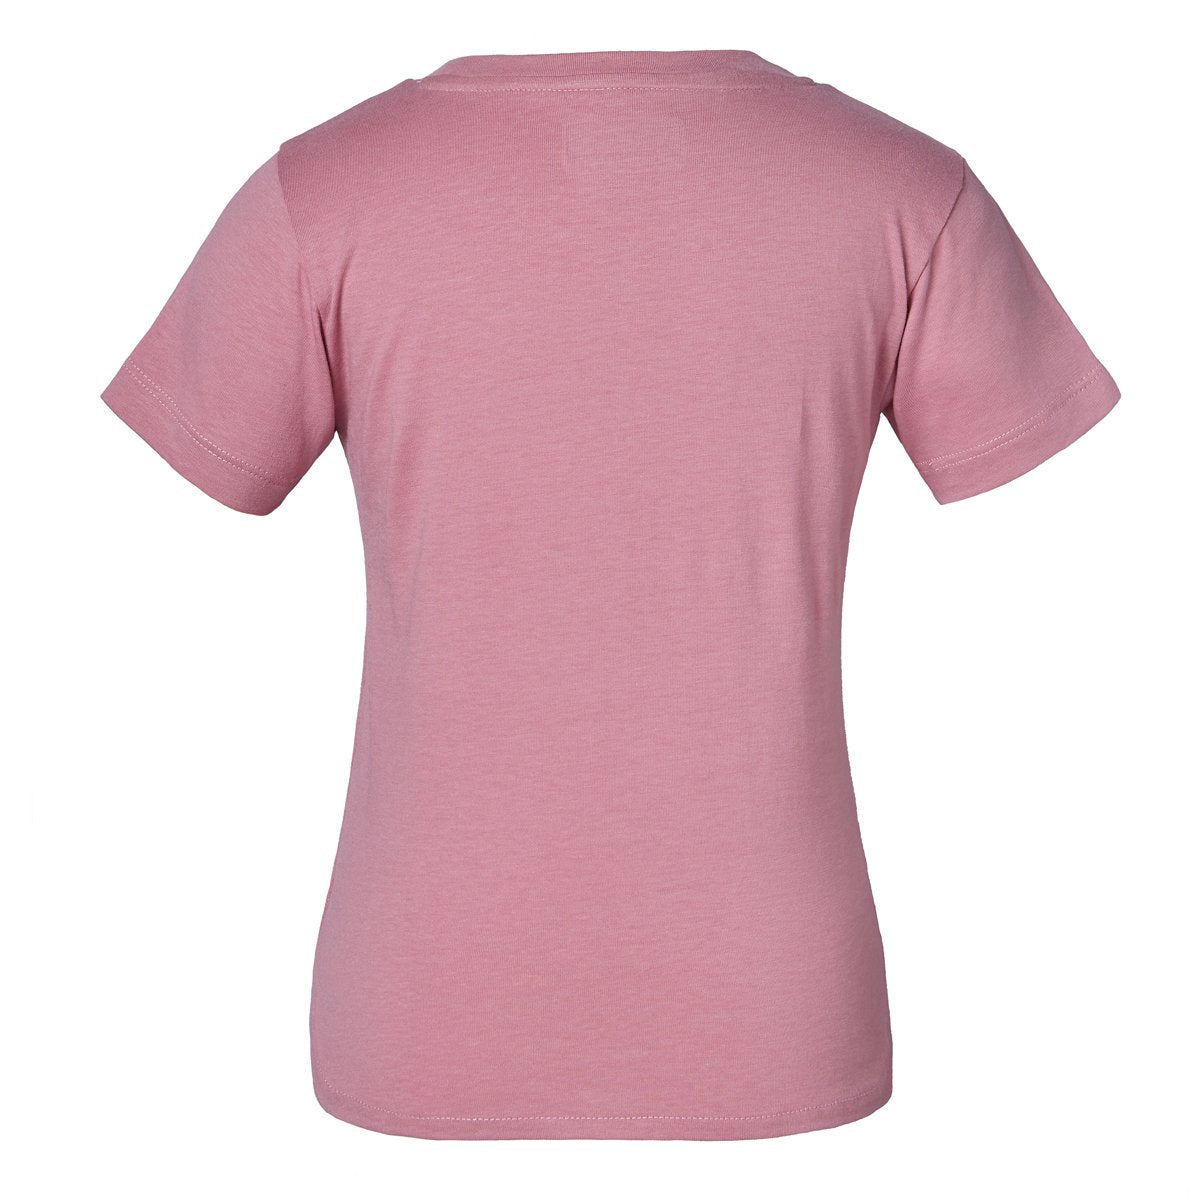 Camiseta Quissa niña rosa - Imagen 2